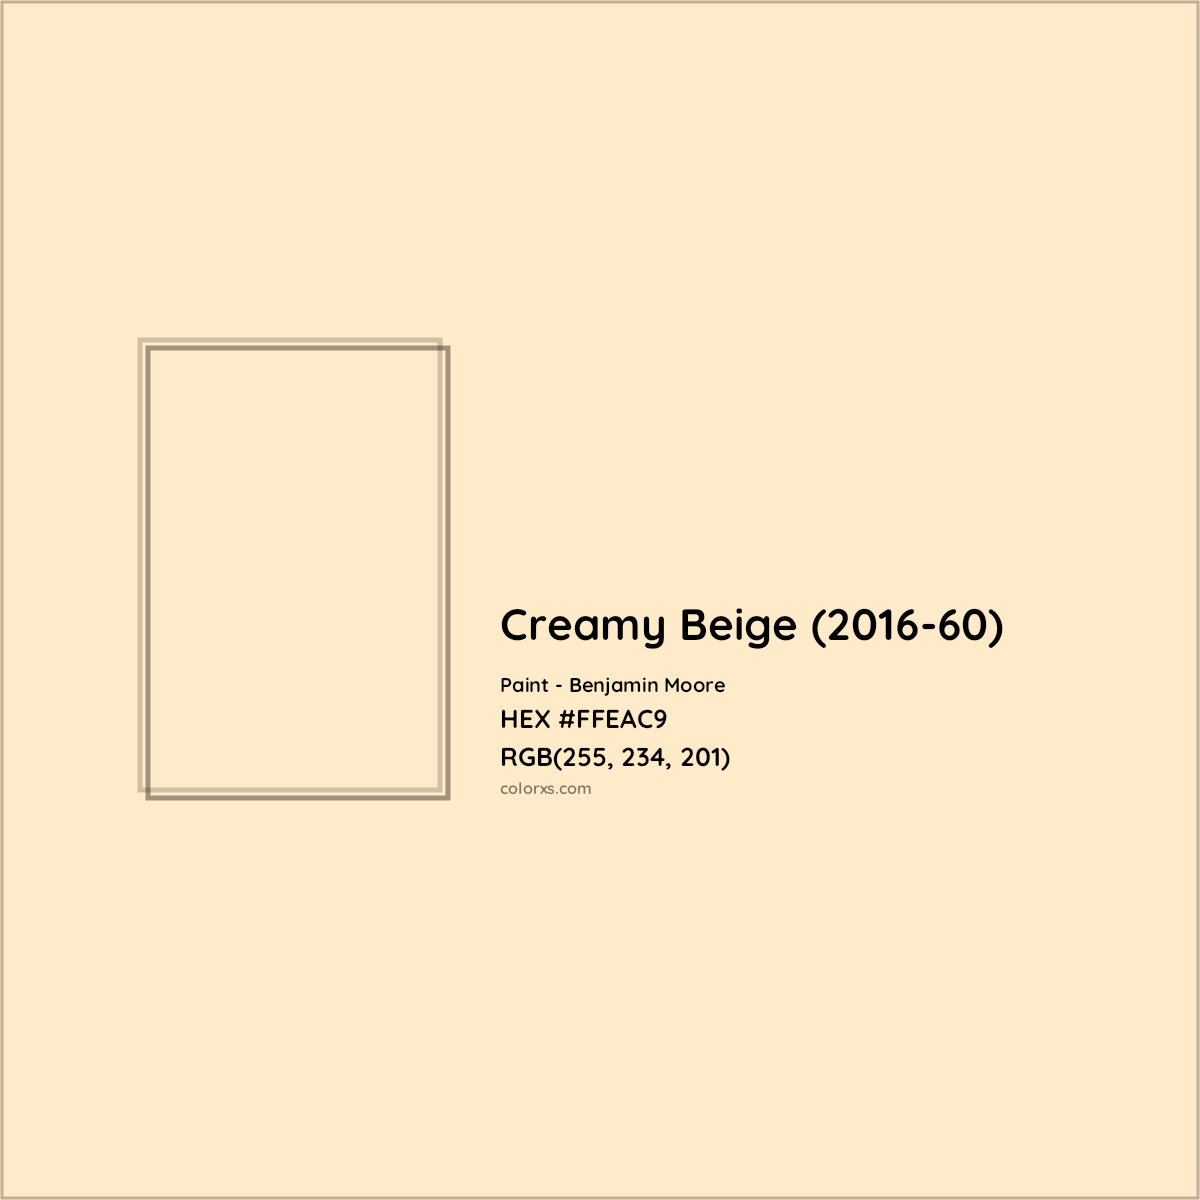 HEX #FFEAC9 Creamy Beige (2016-60) Paint Benjamin Moore - Color Code